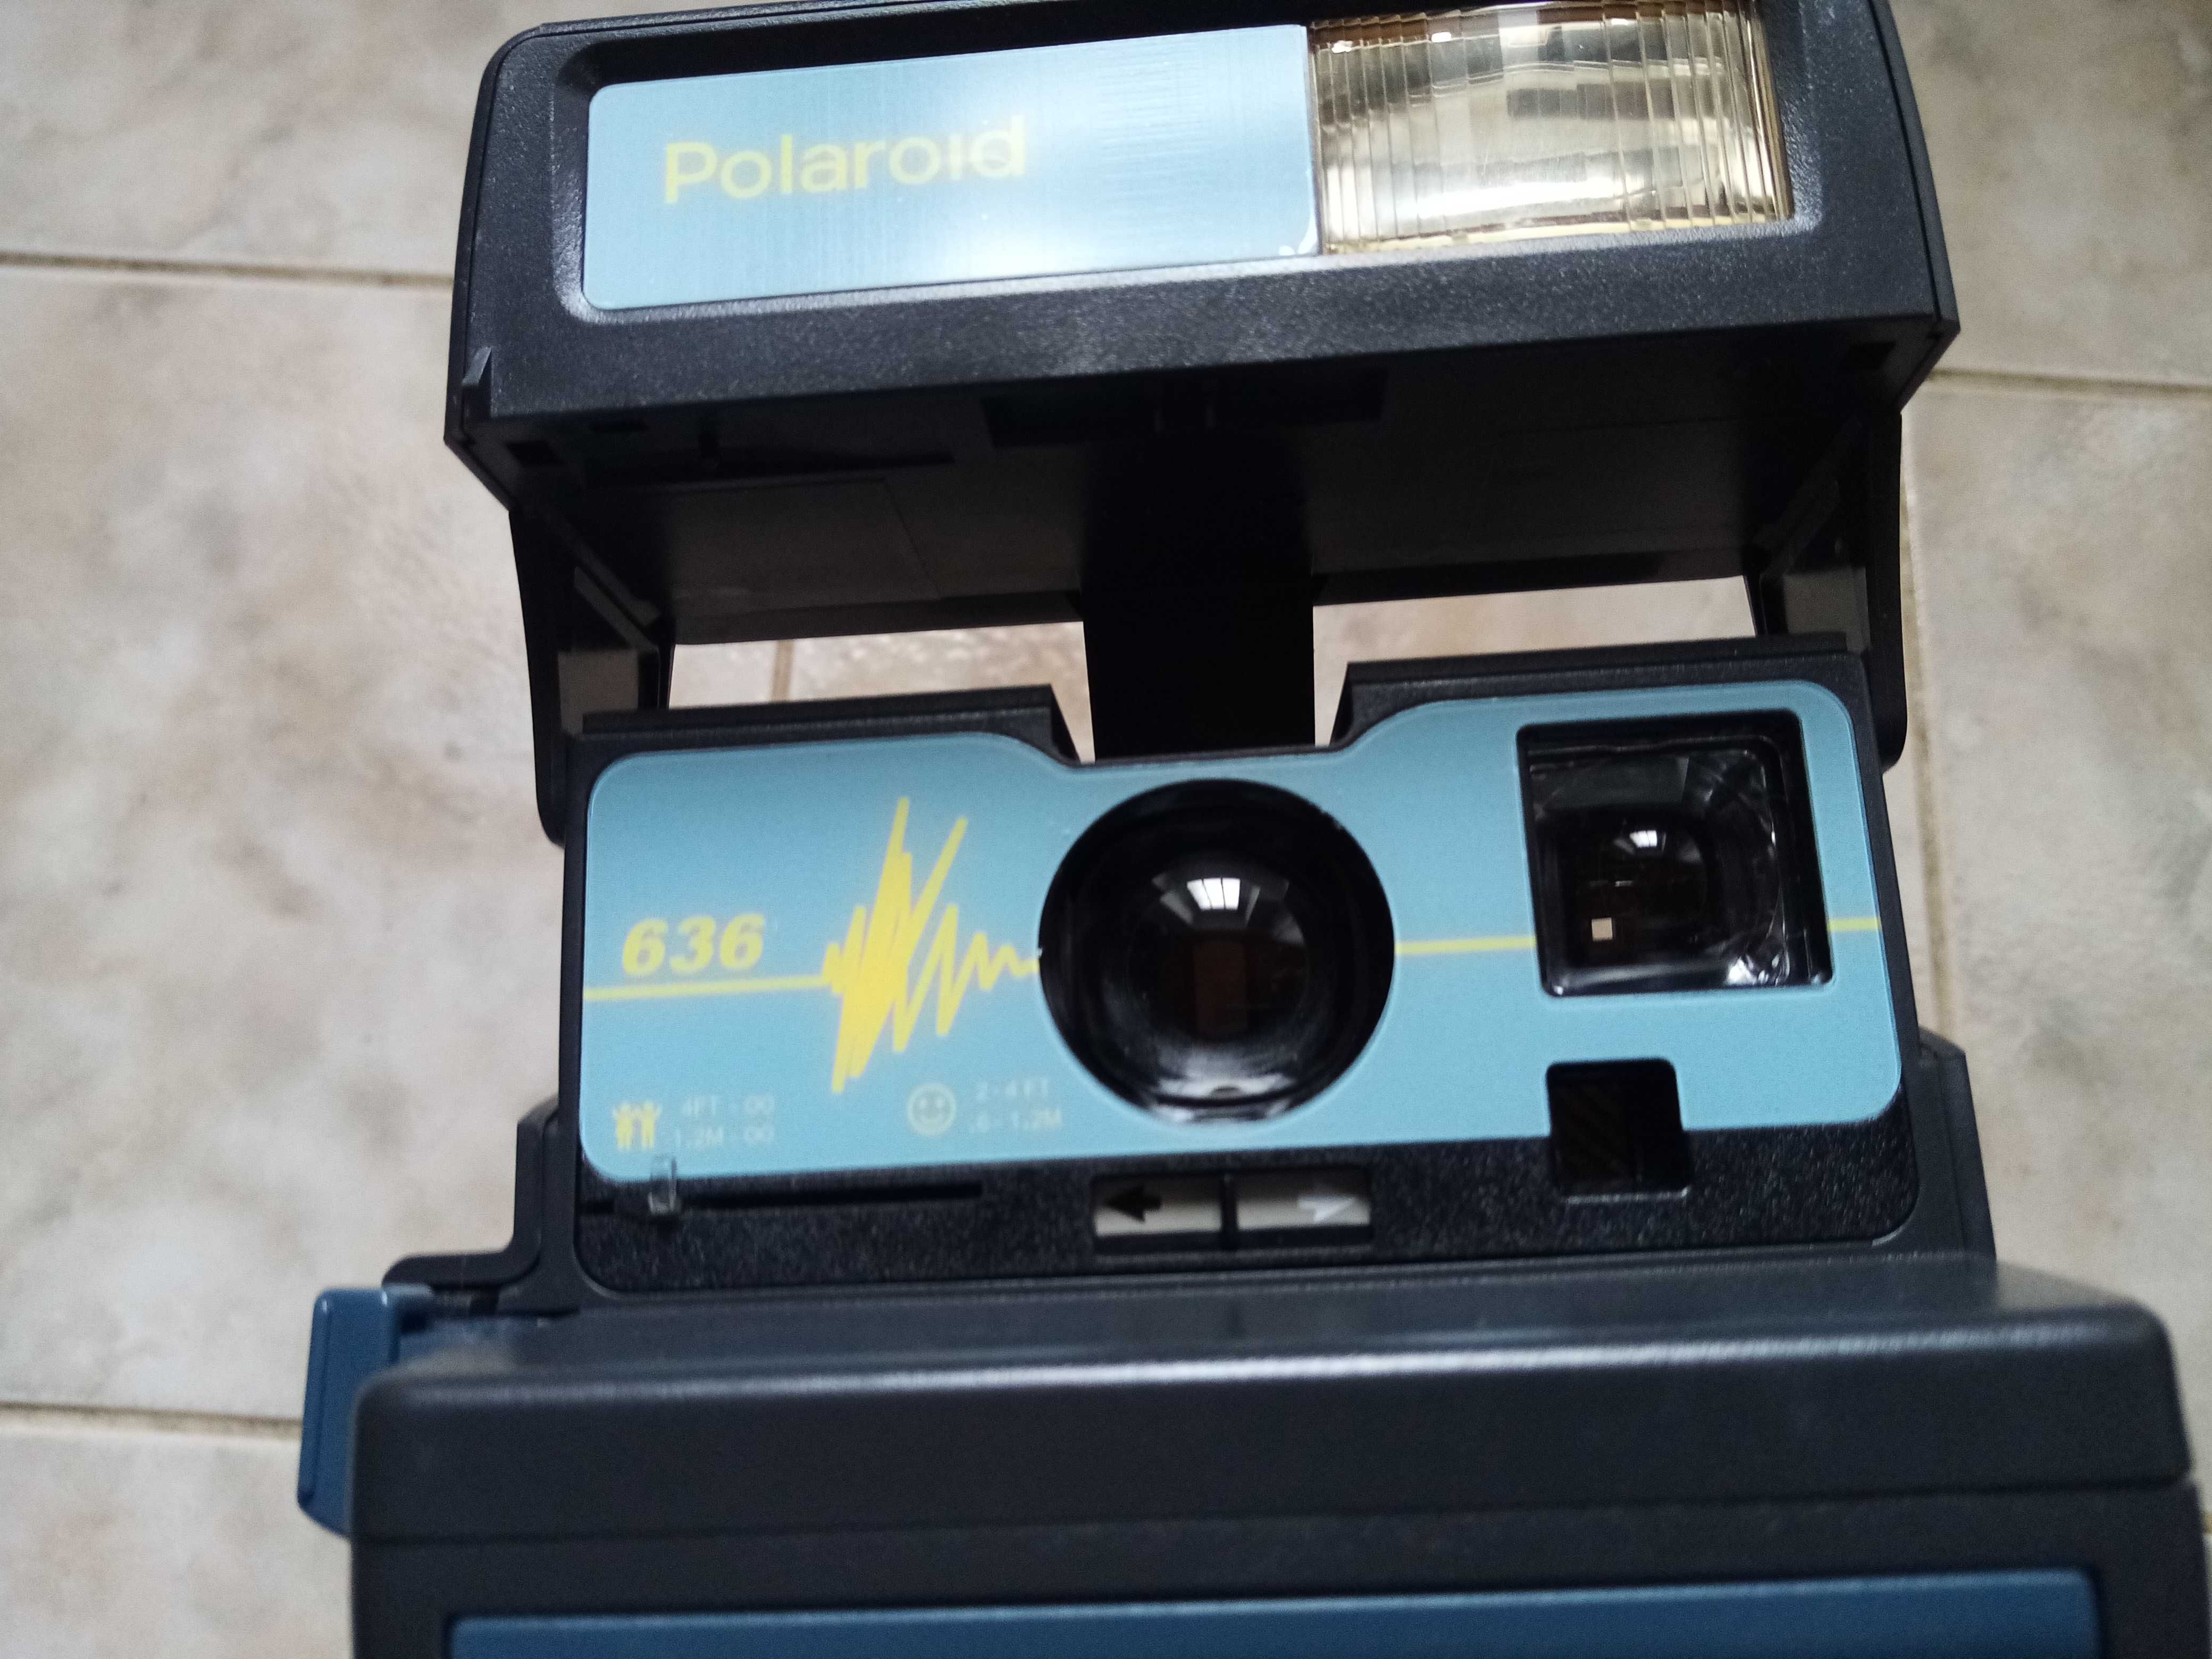 Camera Polaroid ainda com caixa original e manual de instruções.